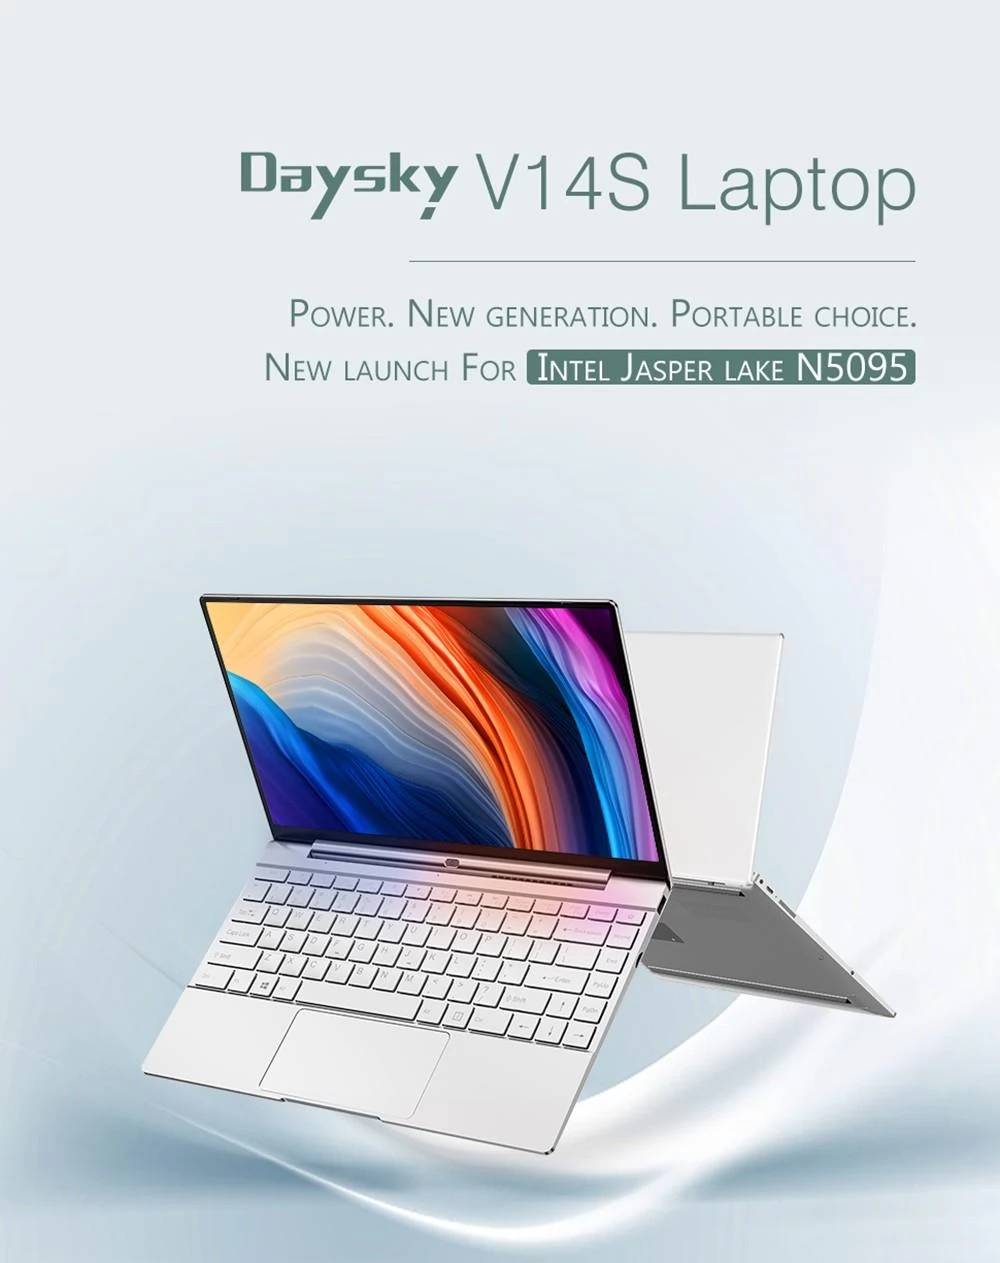 Daysky V14S 14,1 inch laptop Intel Celeron N5095 12GB LPDDR4 512G SSD 1080P FHD met achtergrondverlichting Windows 10